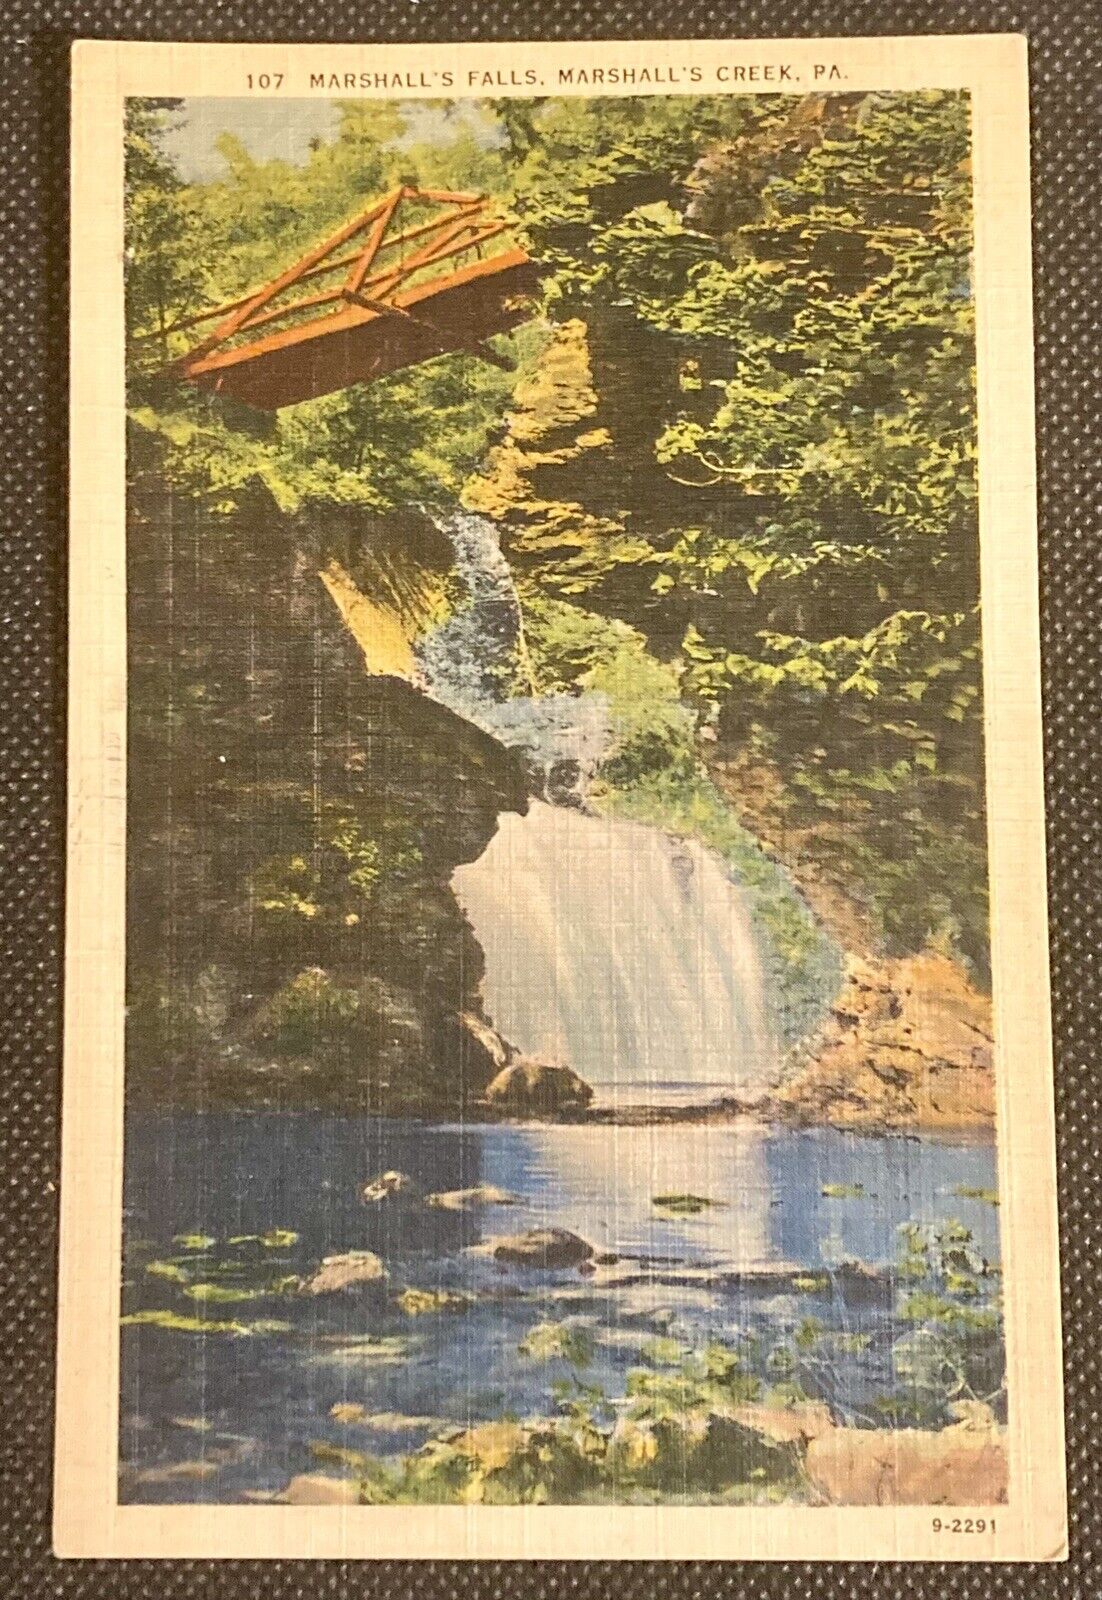 Marshall's Creek, PA Vintage Linen Postcard Marshall's Falls